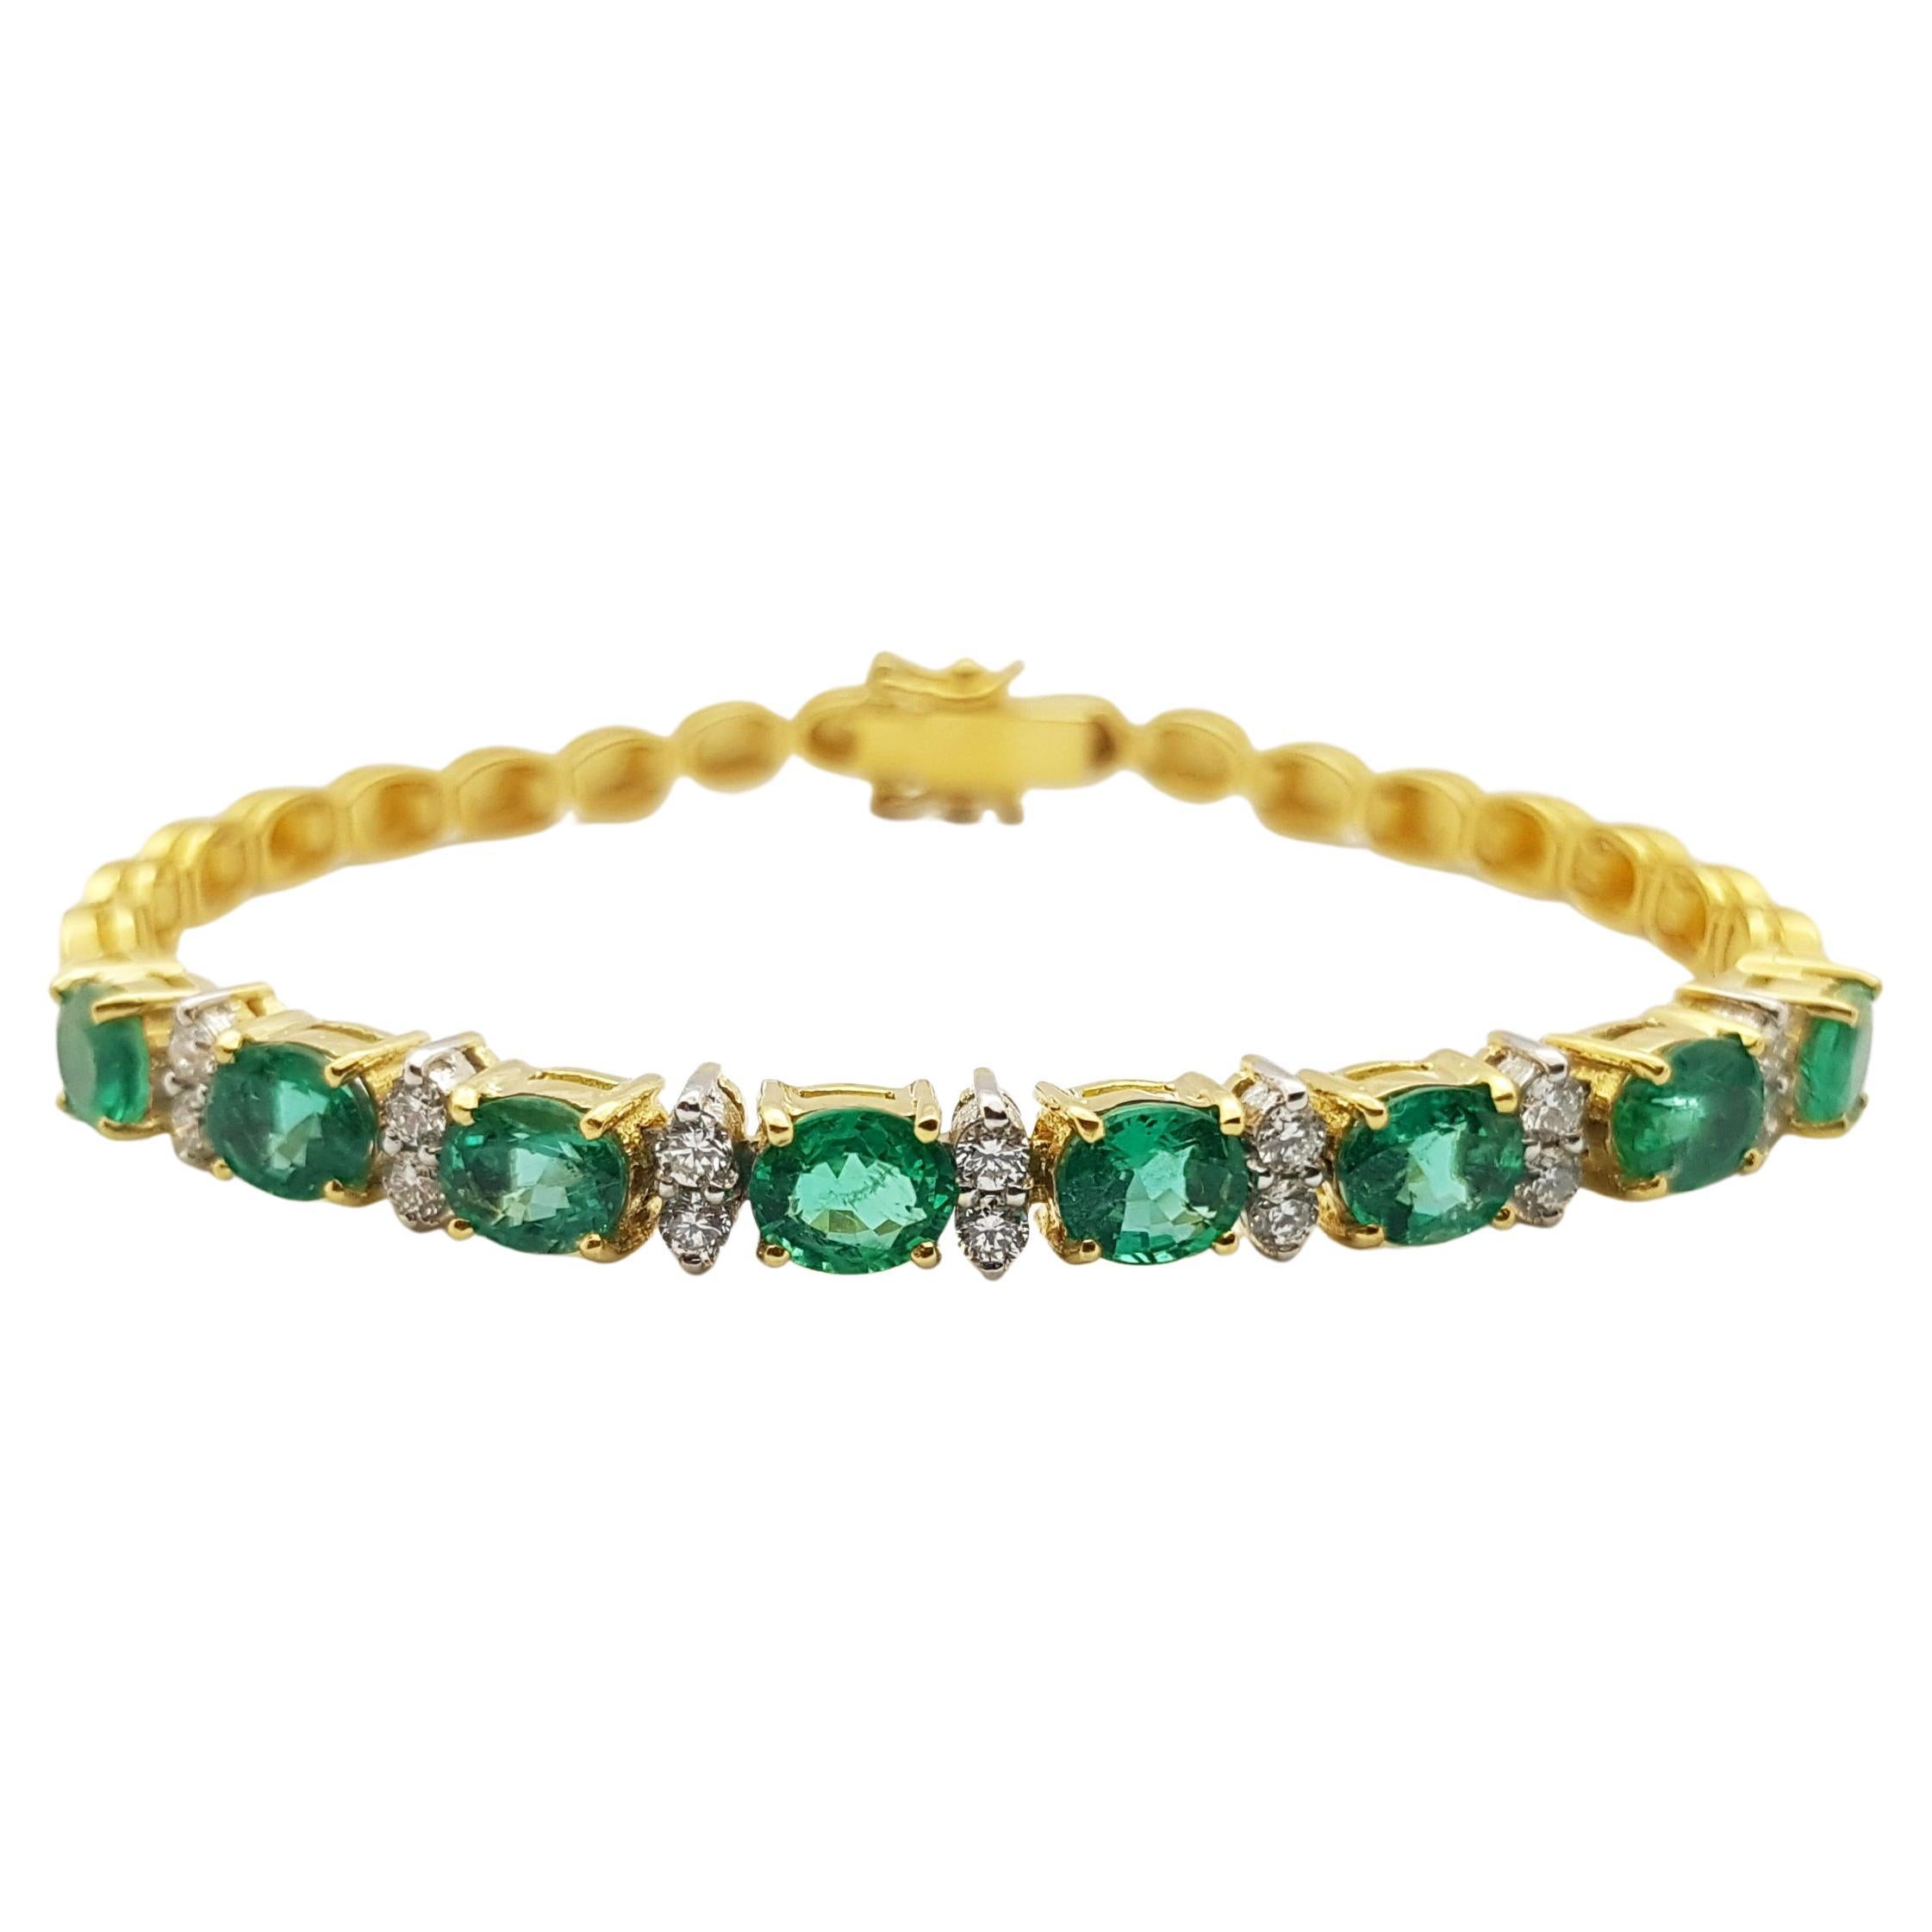 Smaragd mit Diamant-Armband in 18 Karat Goldfassung